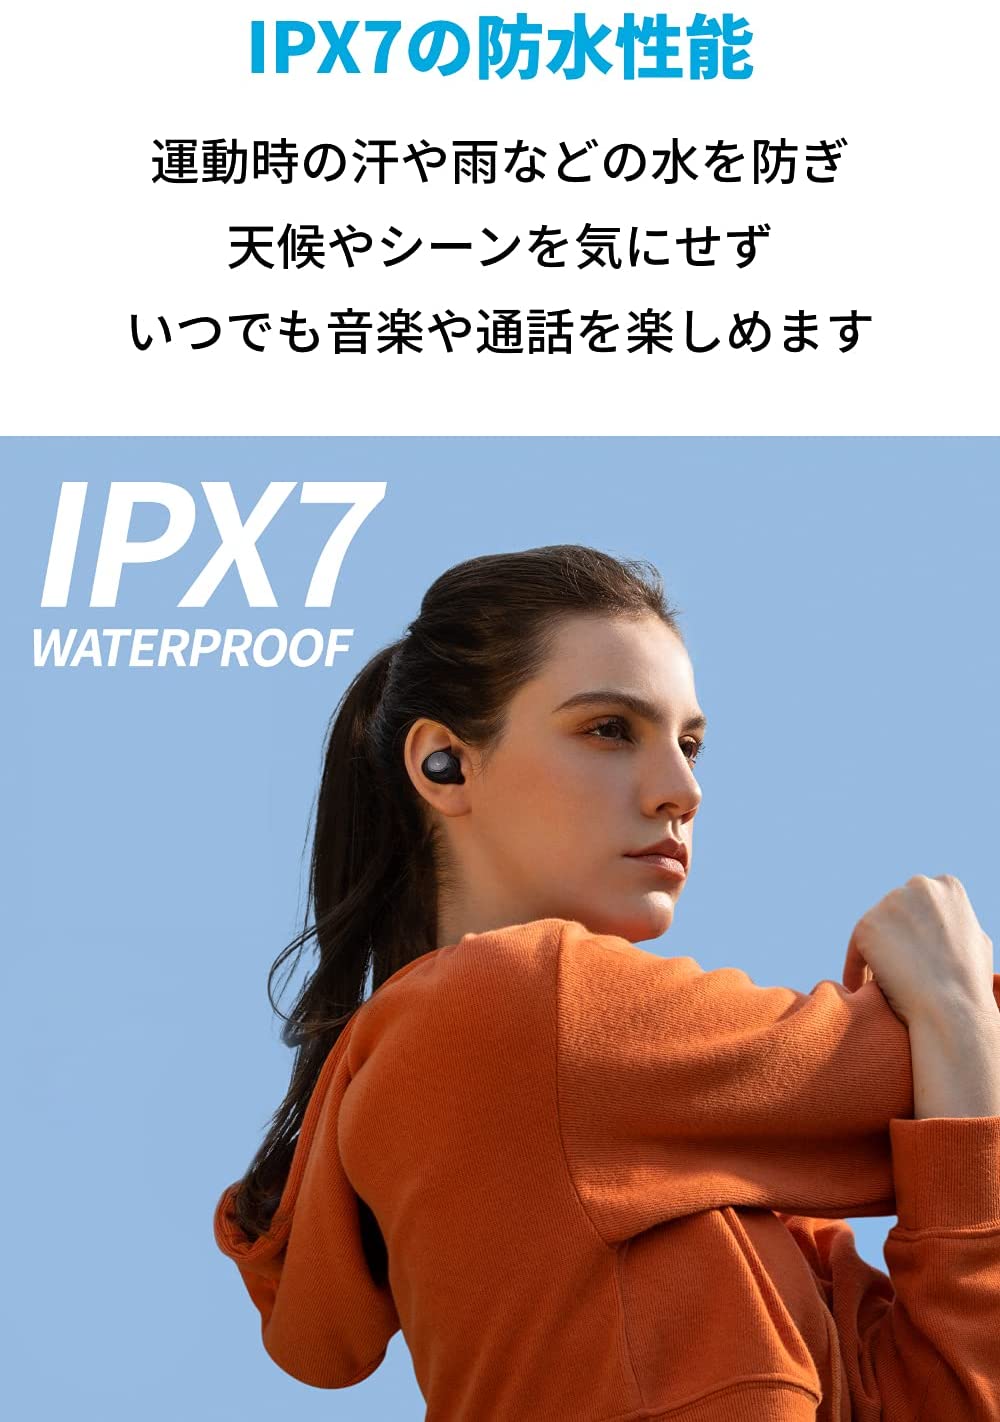 IPX7対応の防水性能